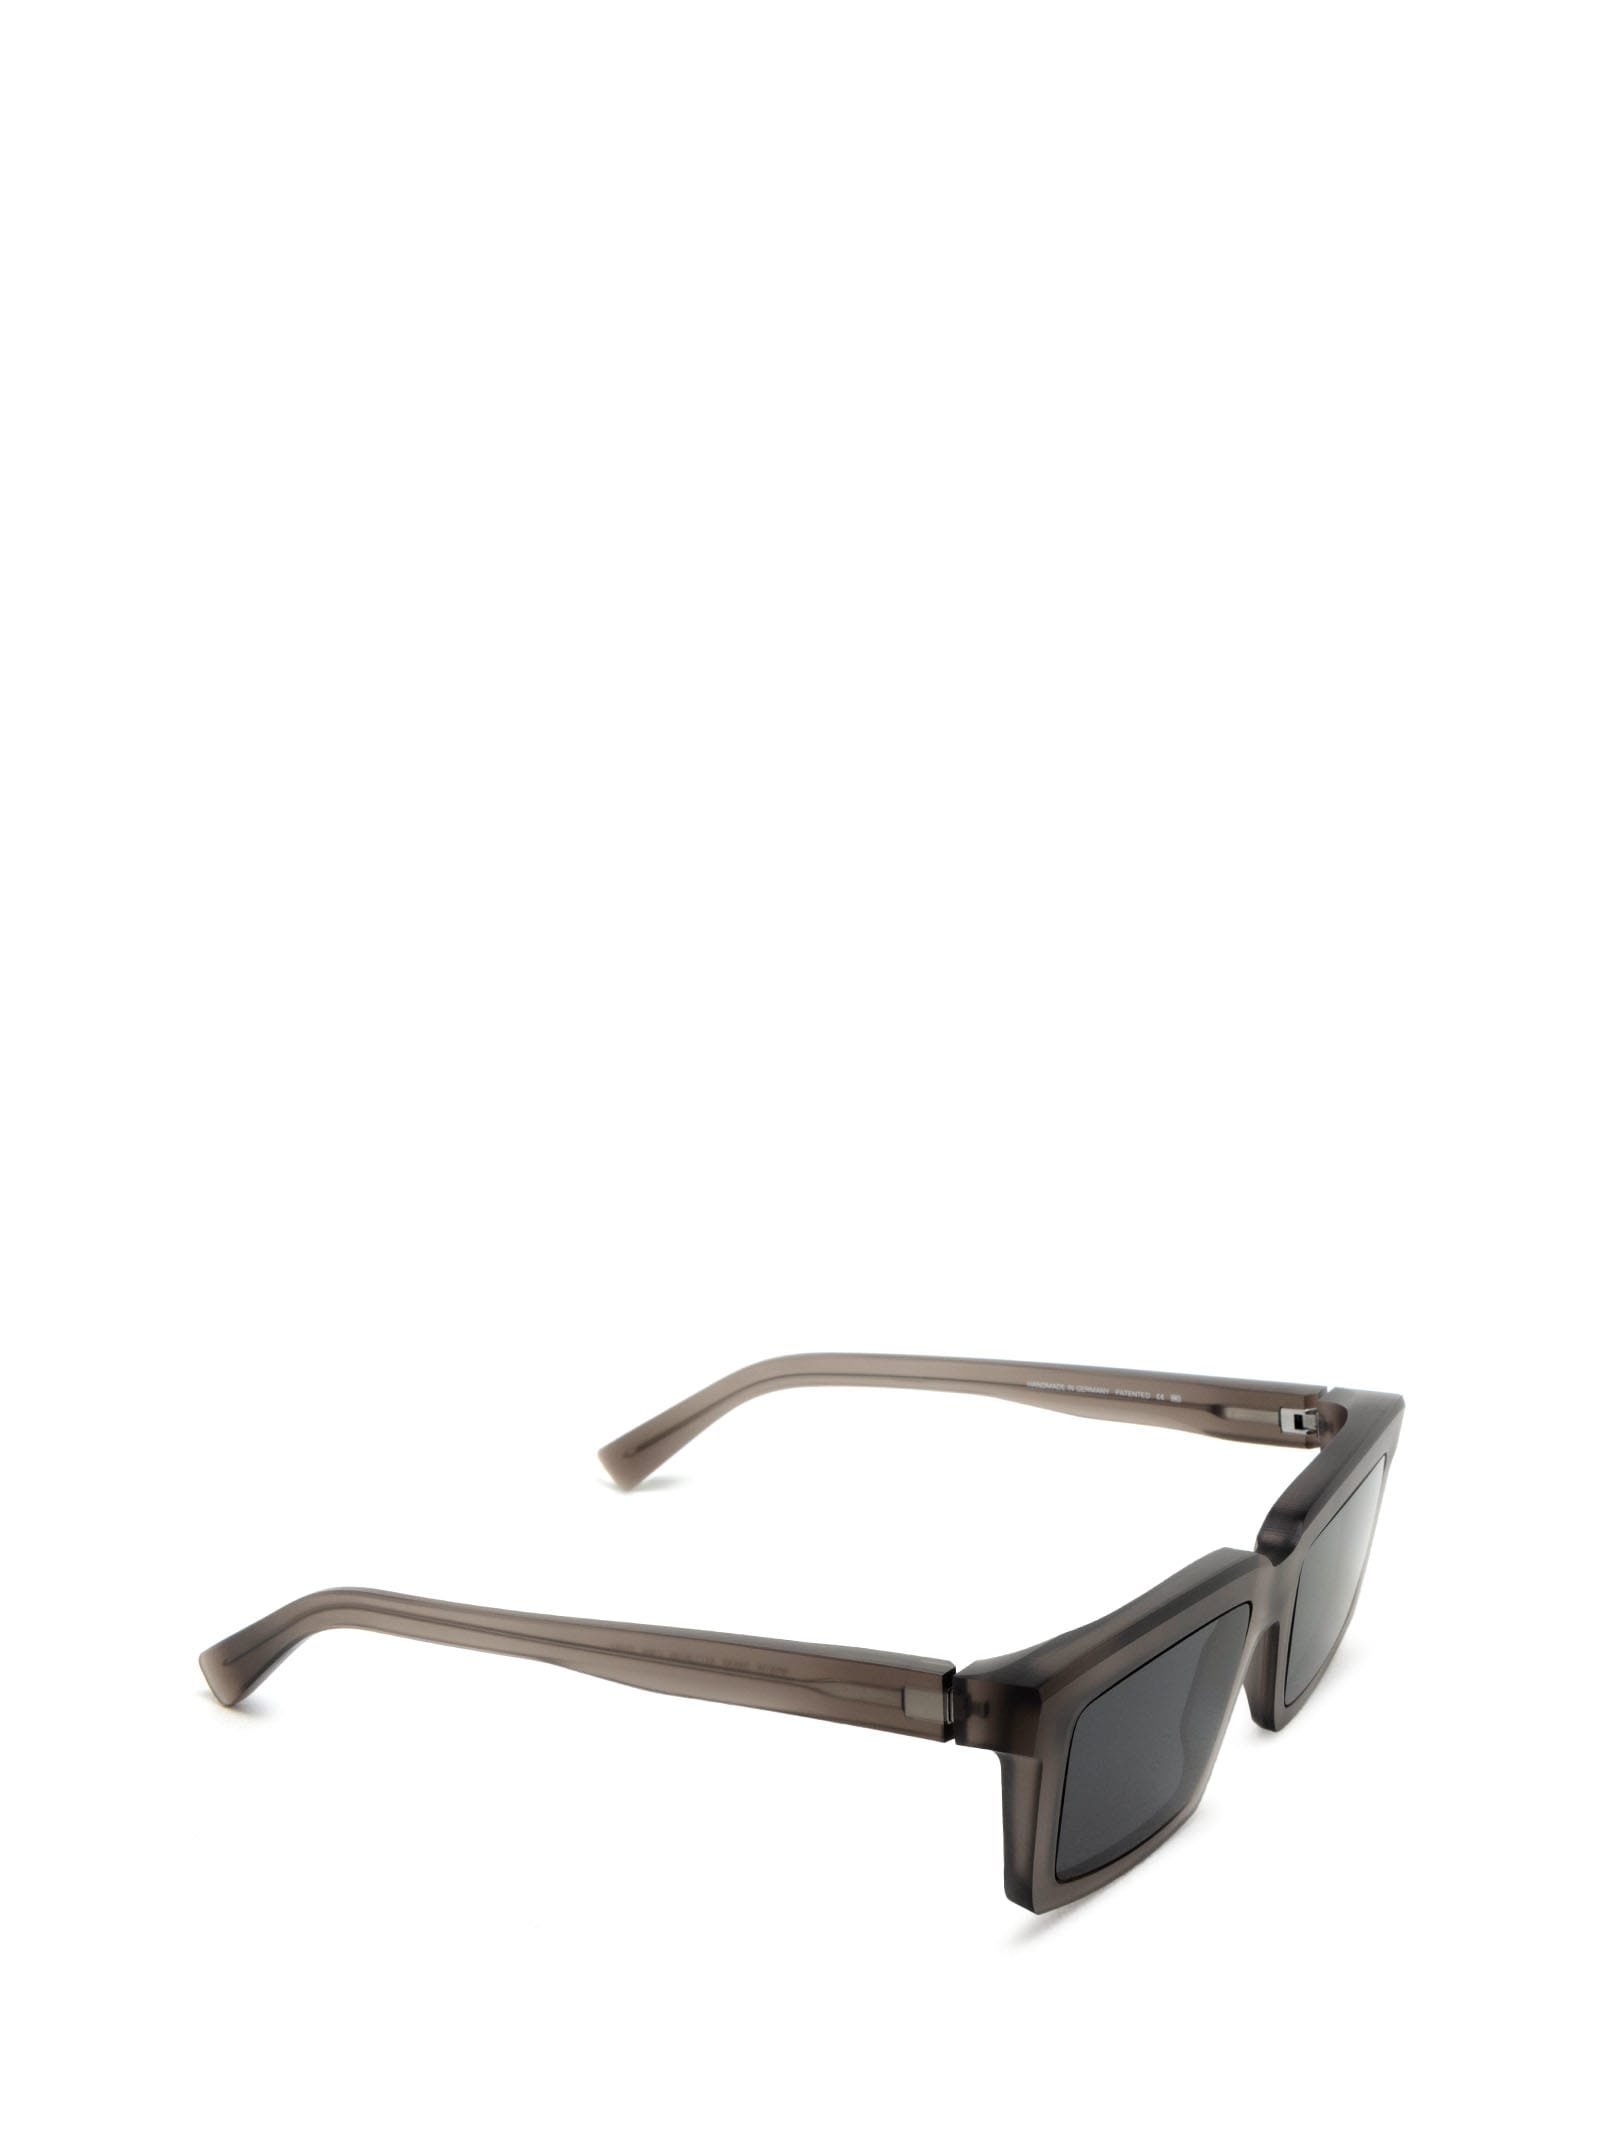 Shop Mykita Dakar Sun C181-chilled Raw Clear Ash/shi Sunglasses